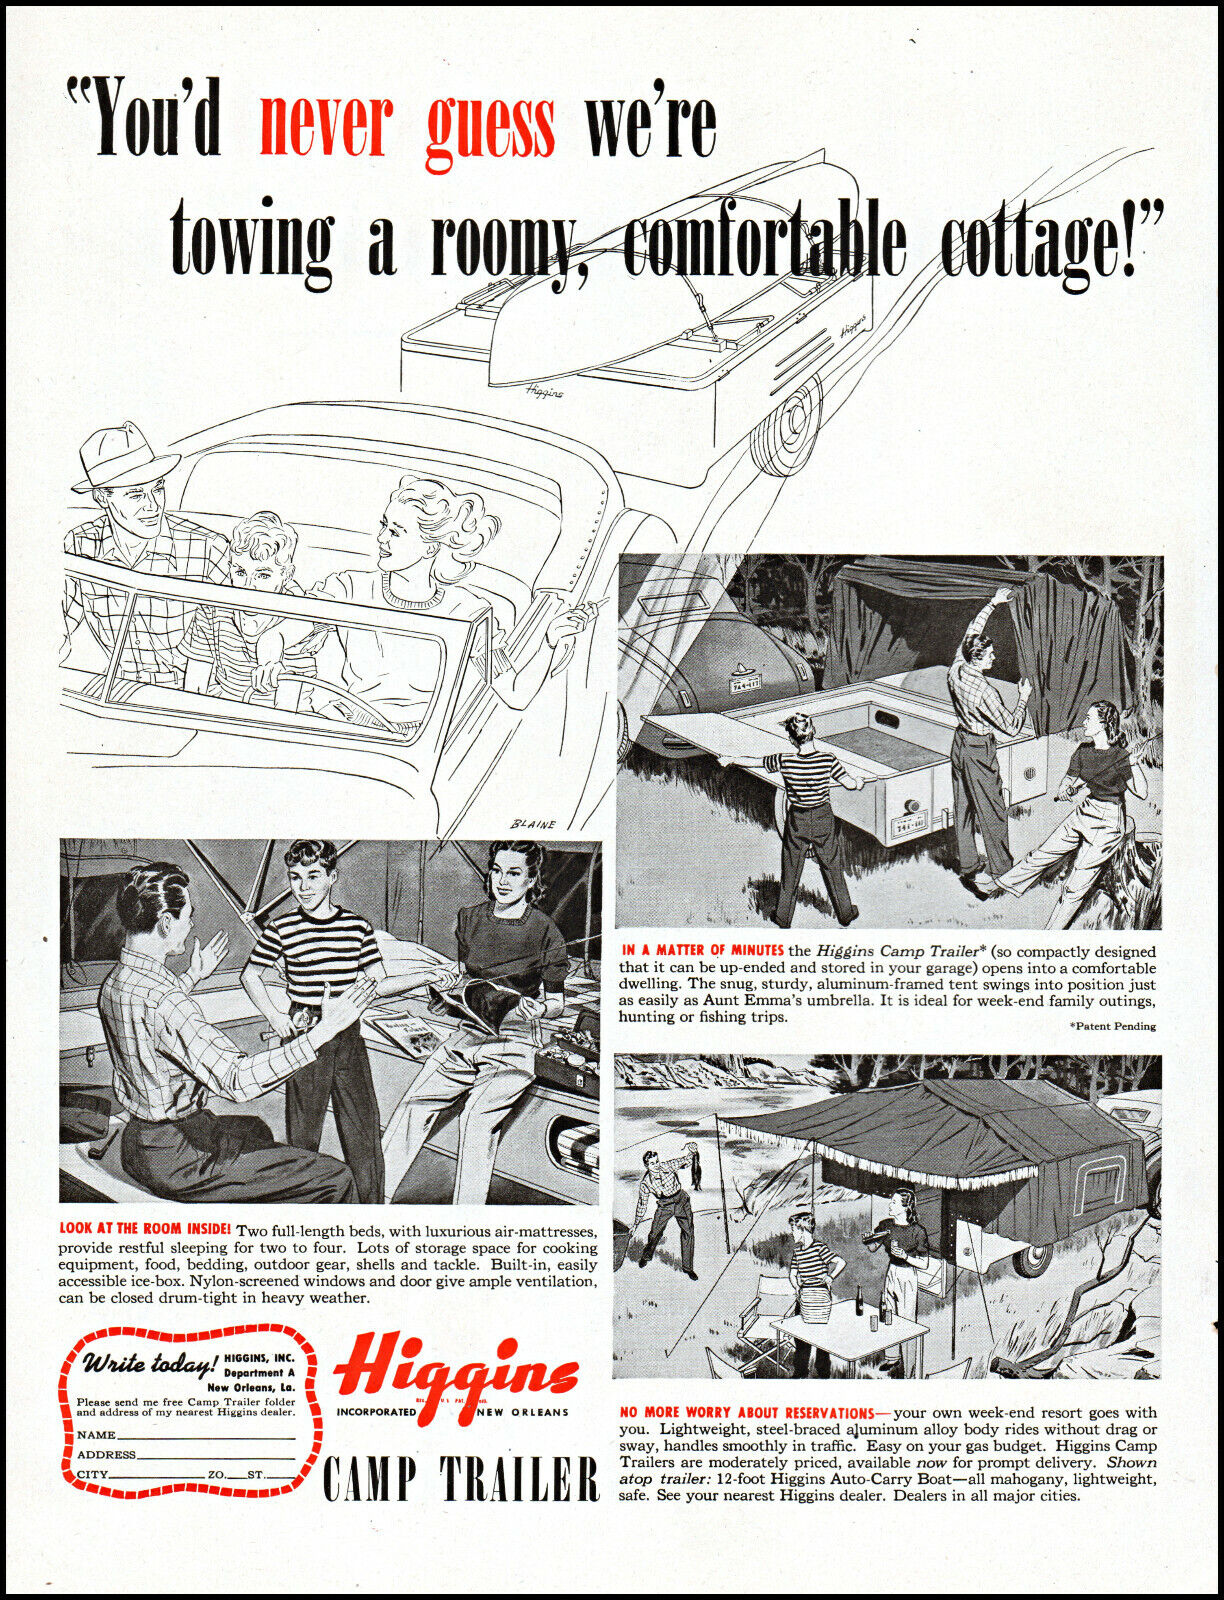 1947 HigginsCamp Trailer vaction family travel cottage vintage art print ad L61